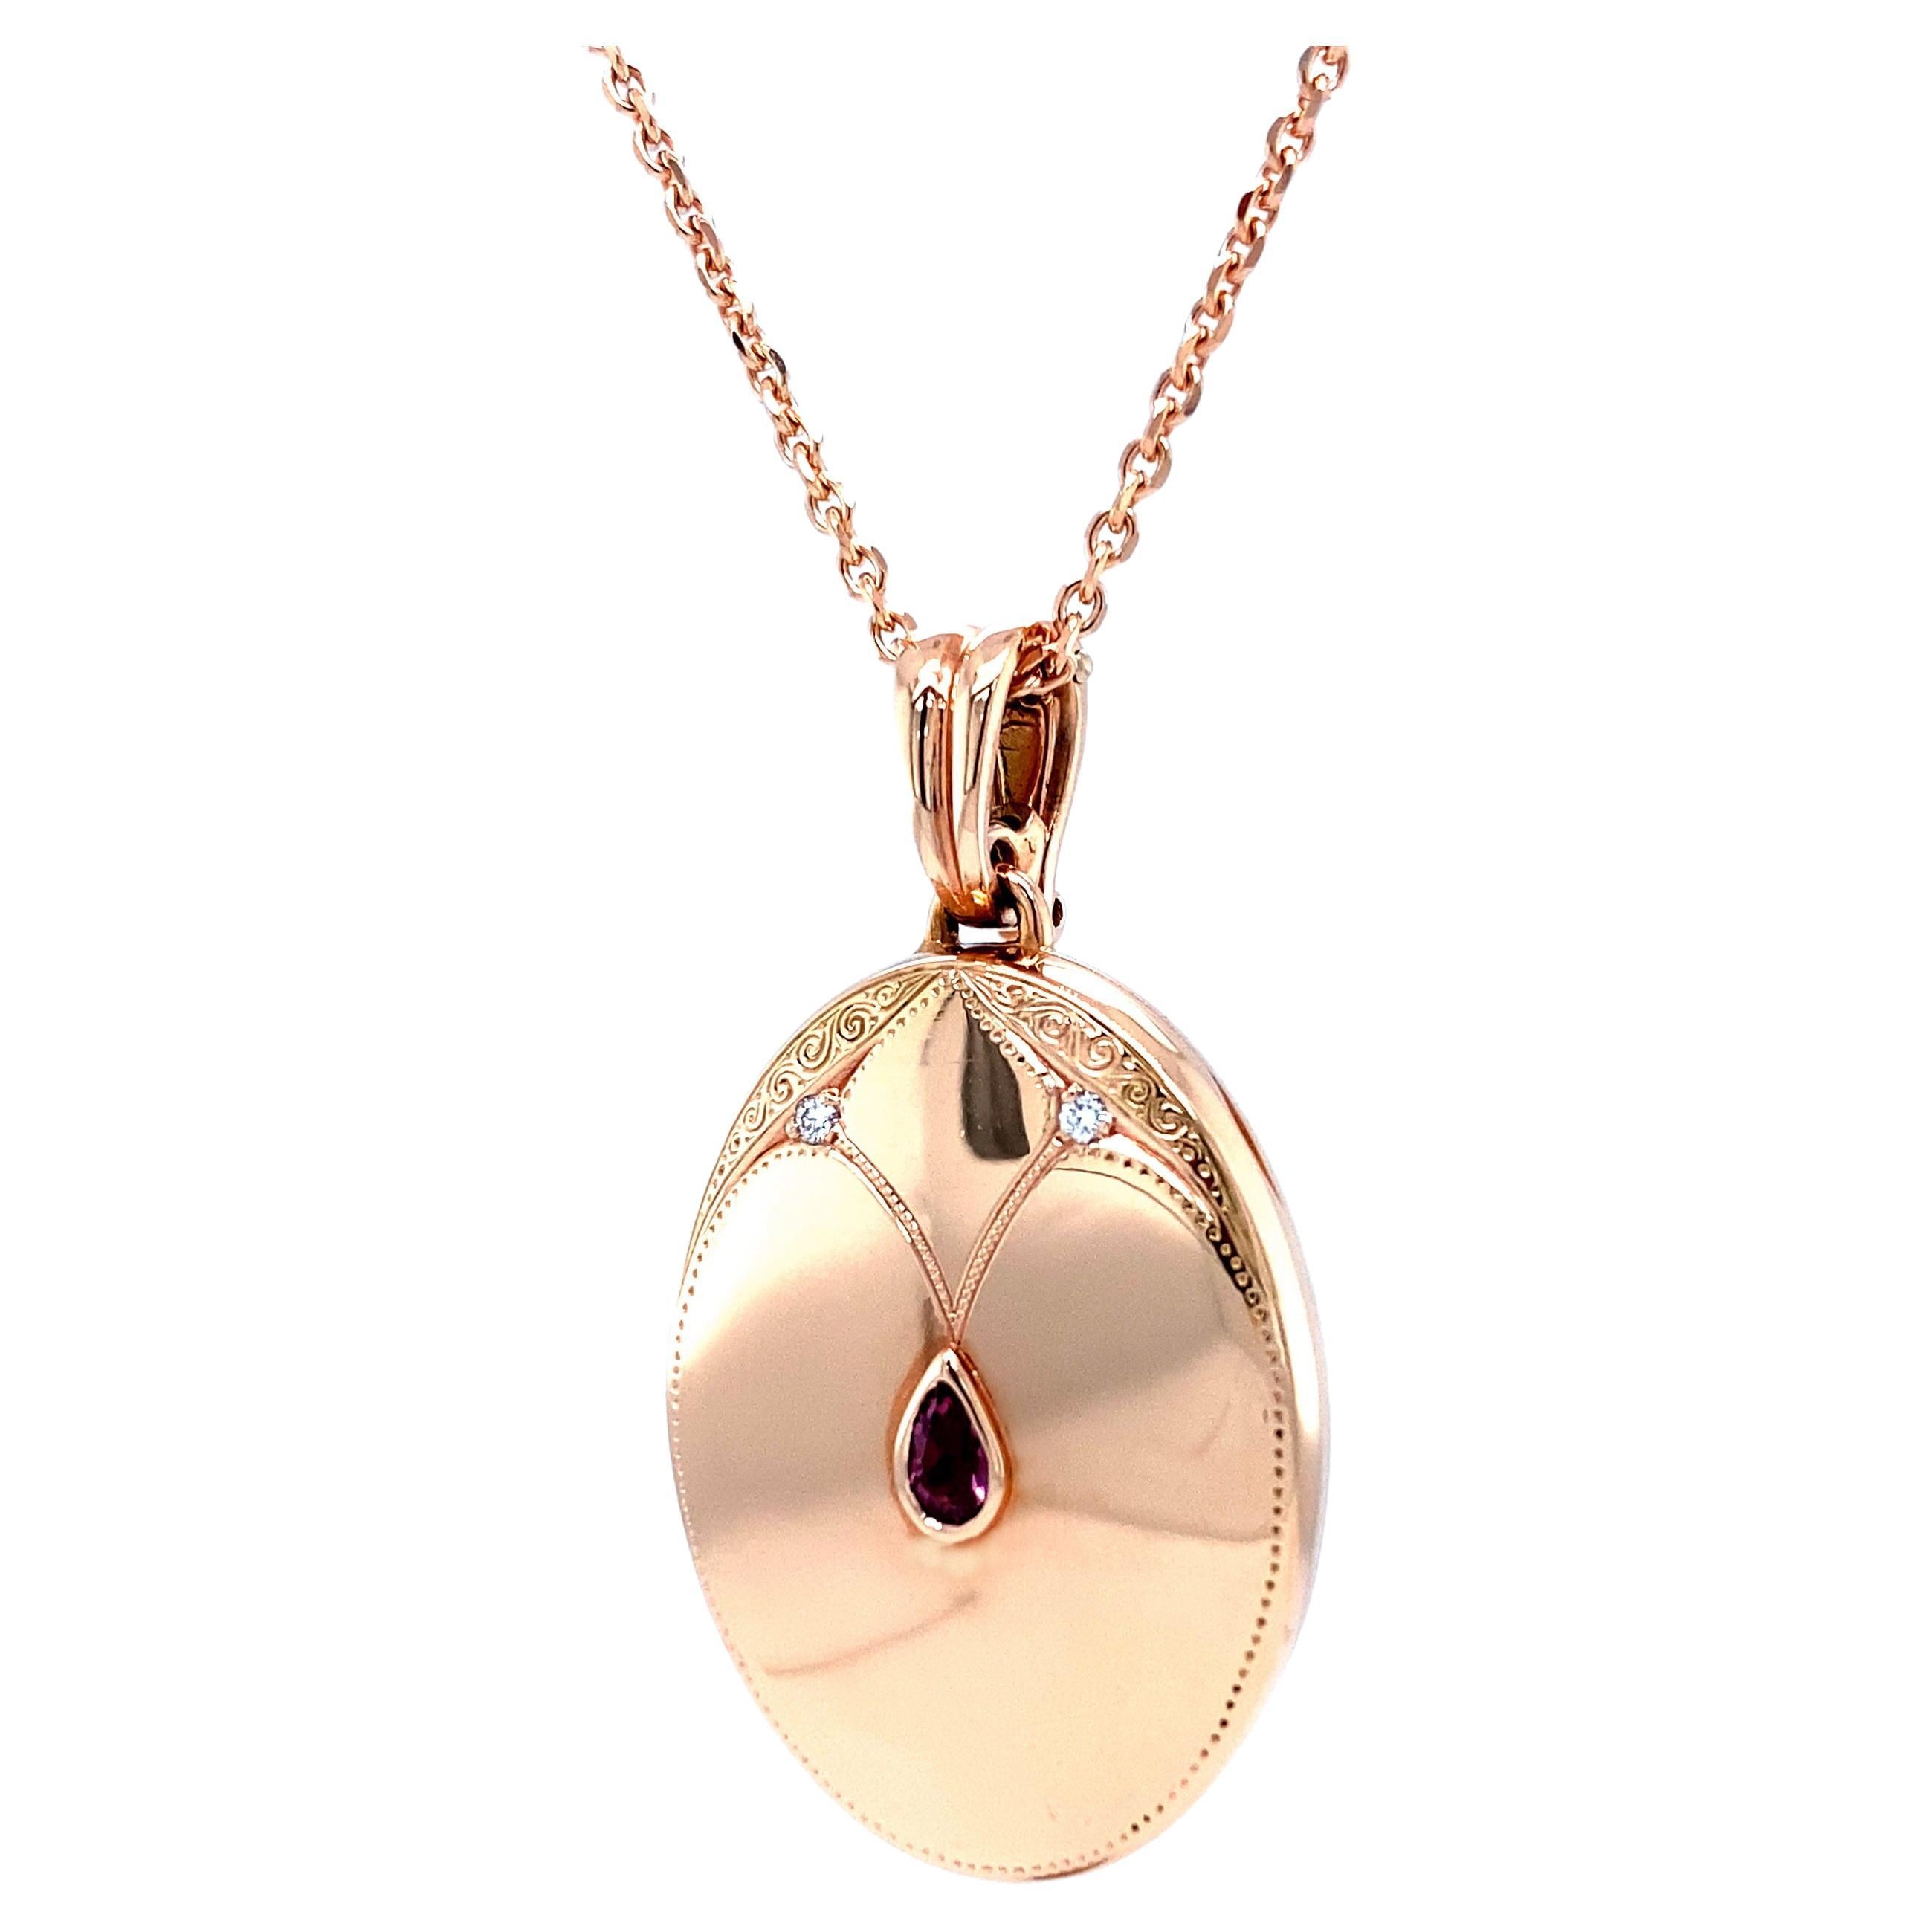 Collier médaillon orné d'un pendentif ovale en or rose 18 carats avec 2 diamants et tourmaline rose